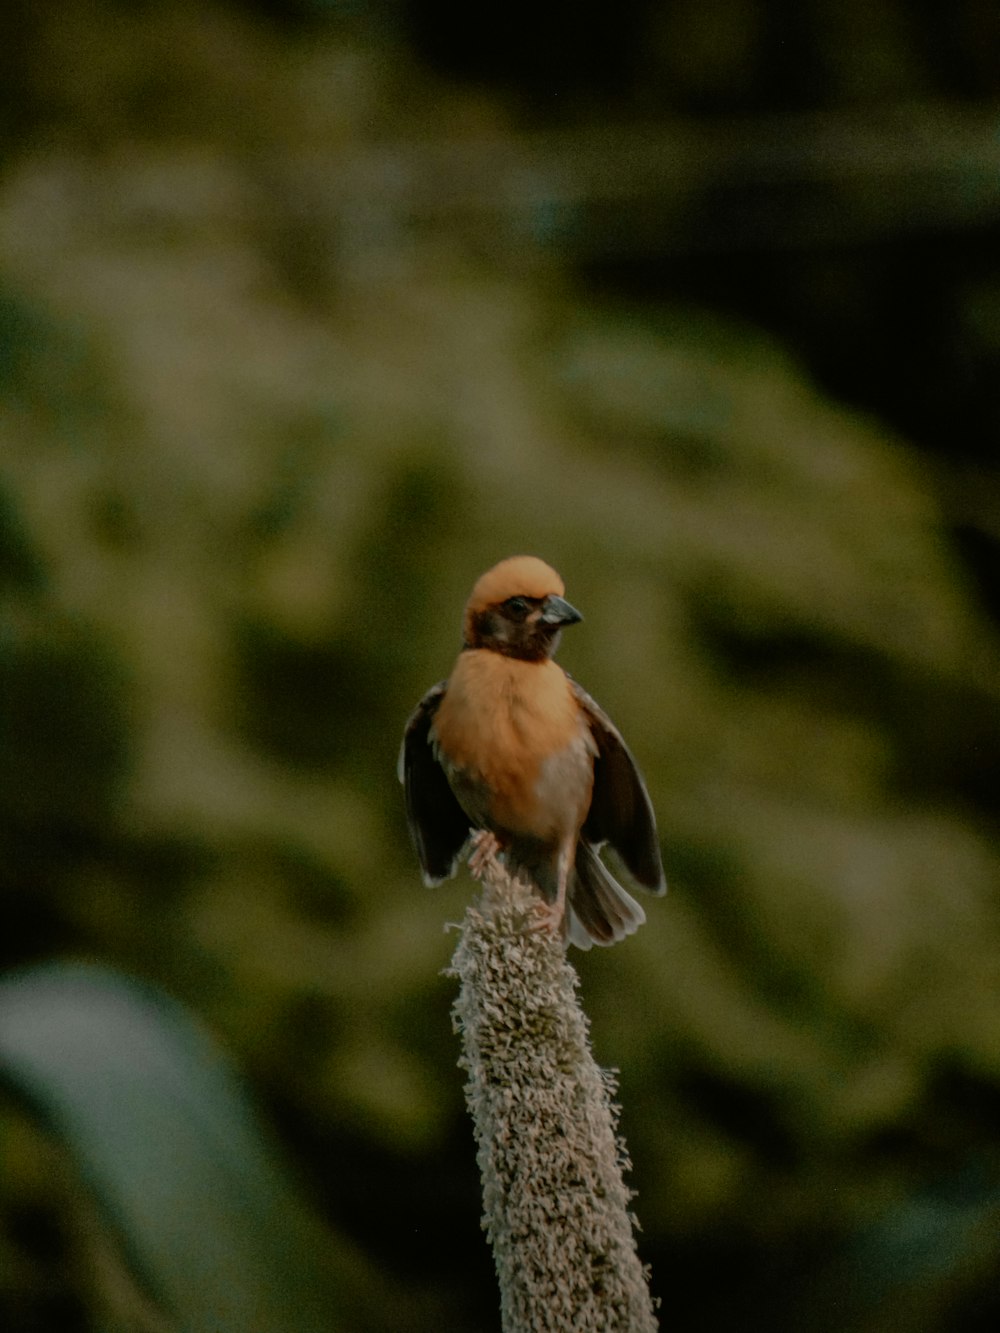 ein kleiner Vogel, der auf einer Pflanze sitzt